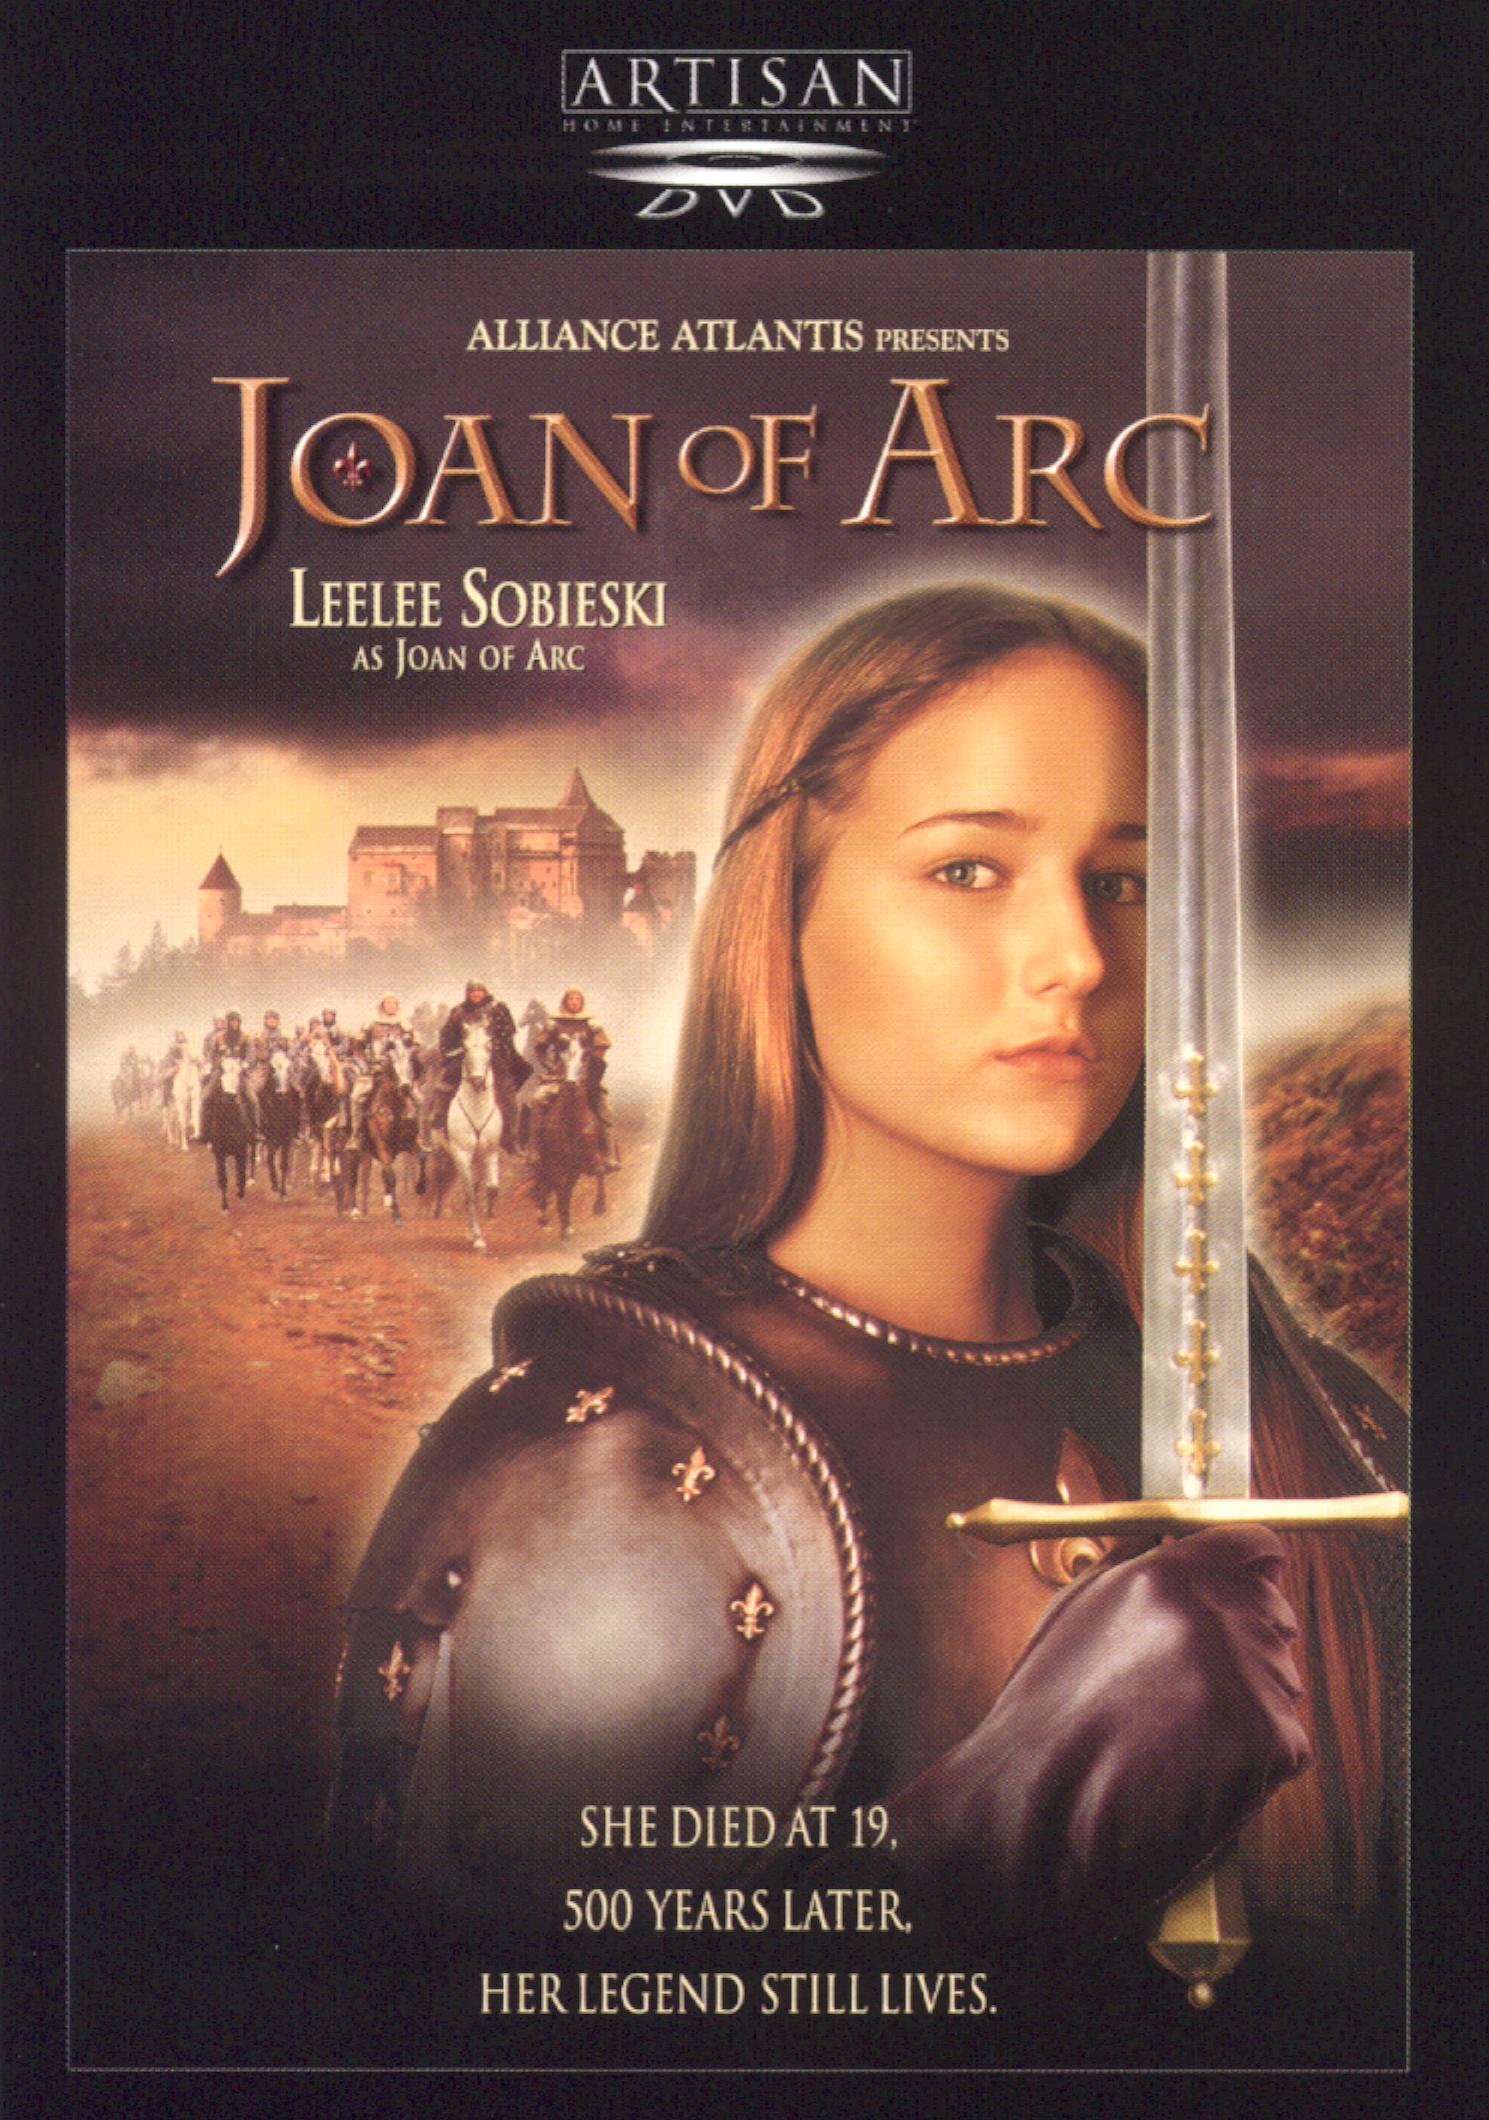 joan of arc pernoud